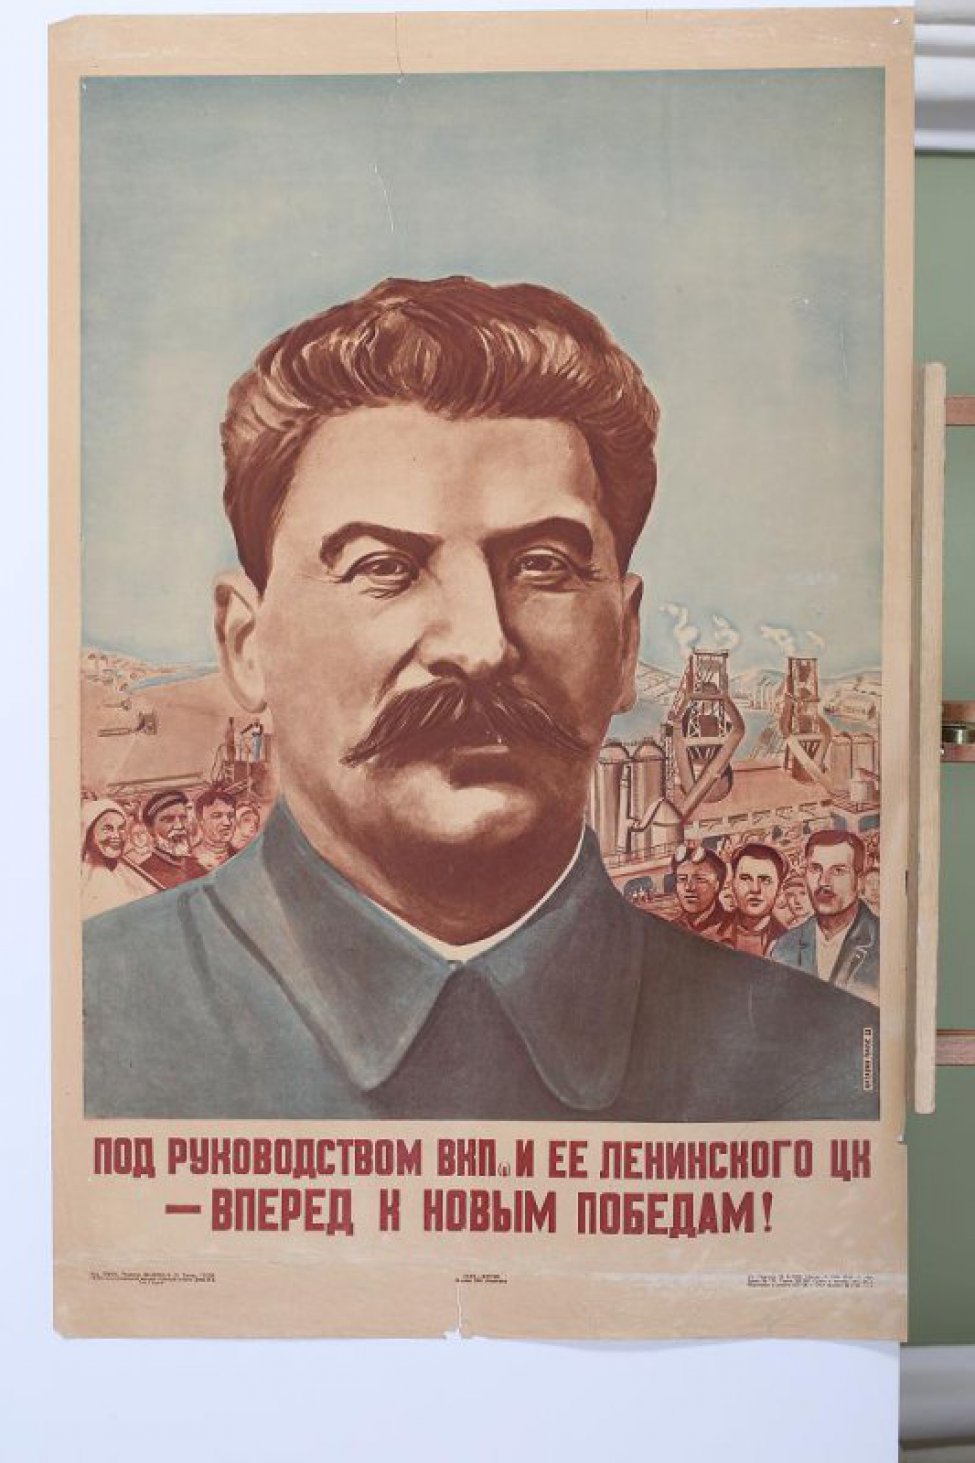 Изображен портрет т.Сталина погрудный. На втором плане индустриальные постройки,крестьяне и рабочие.